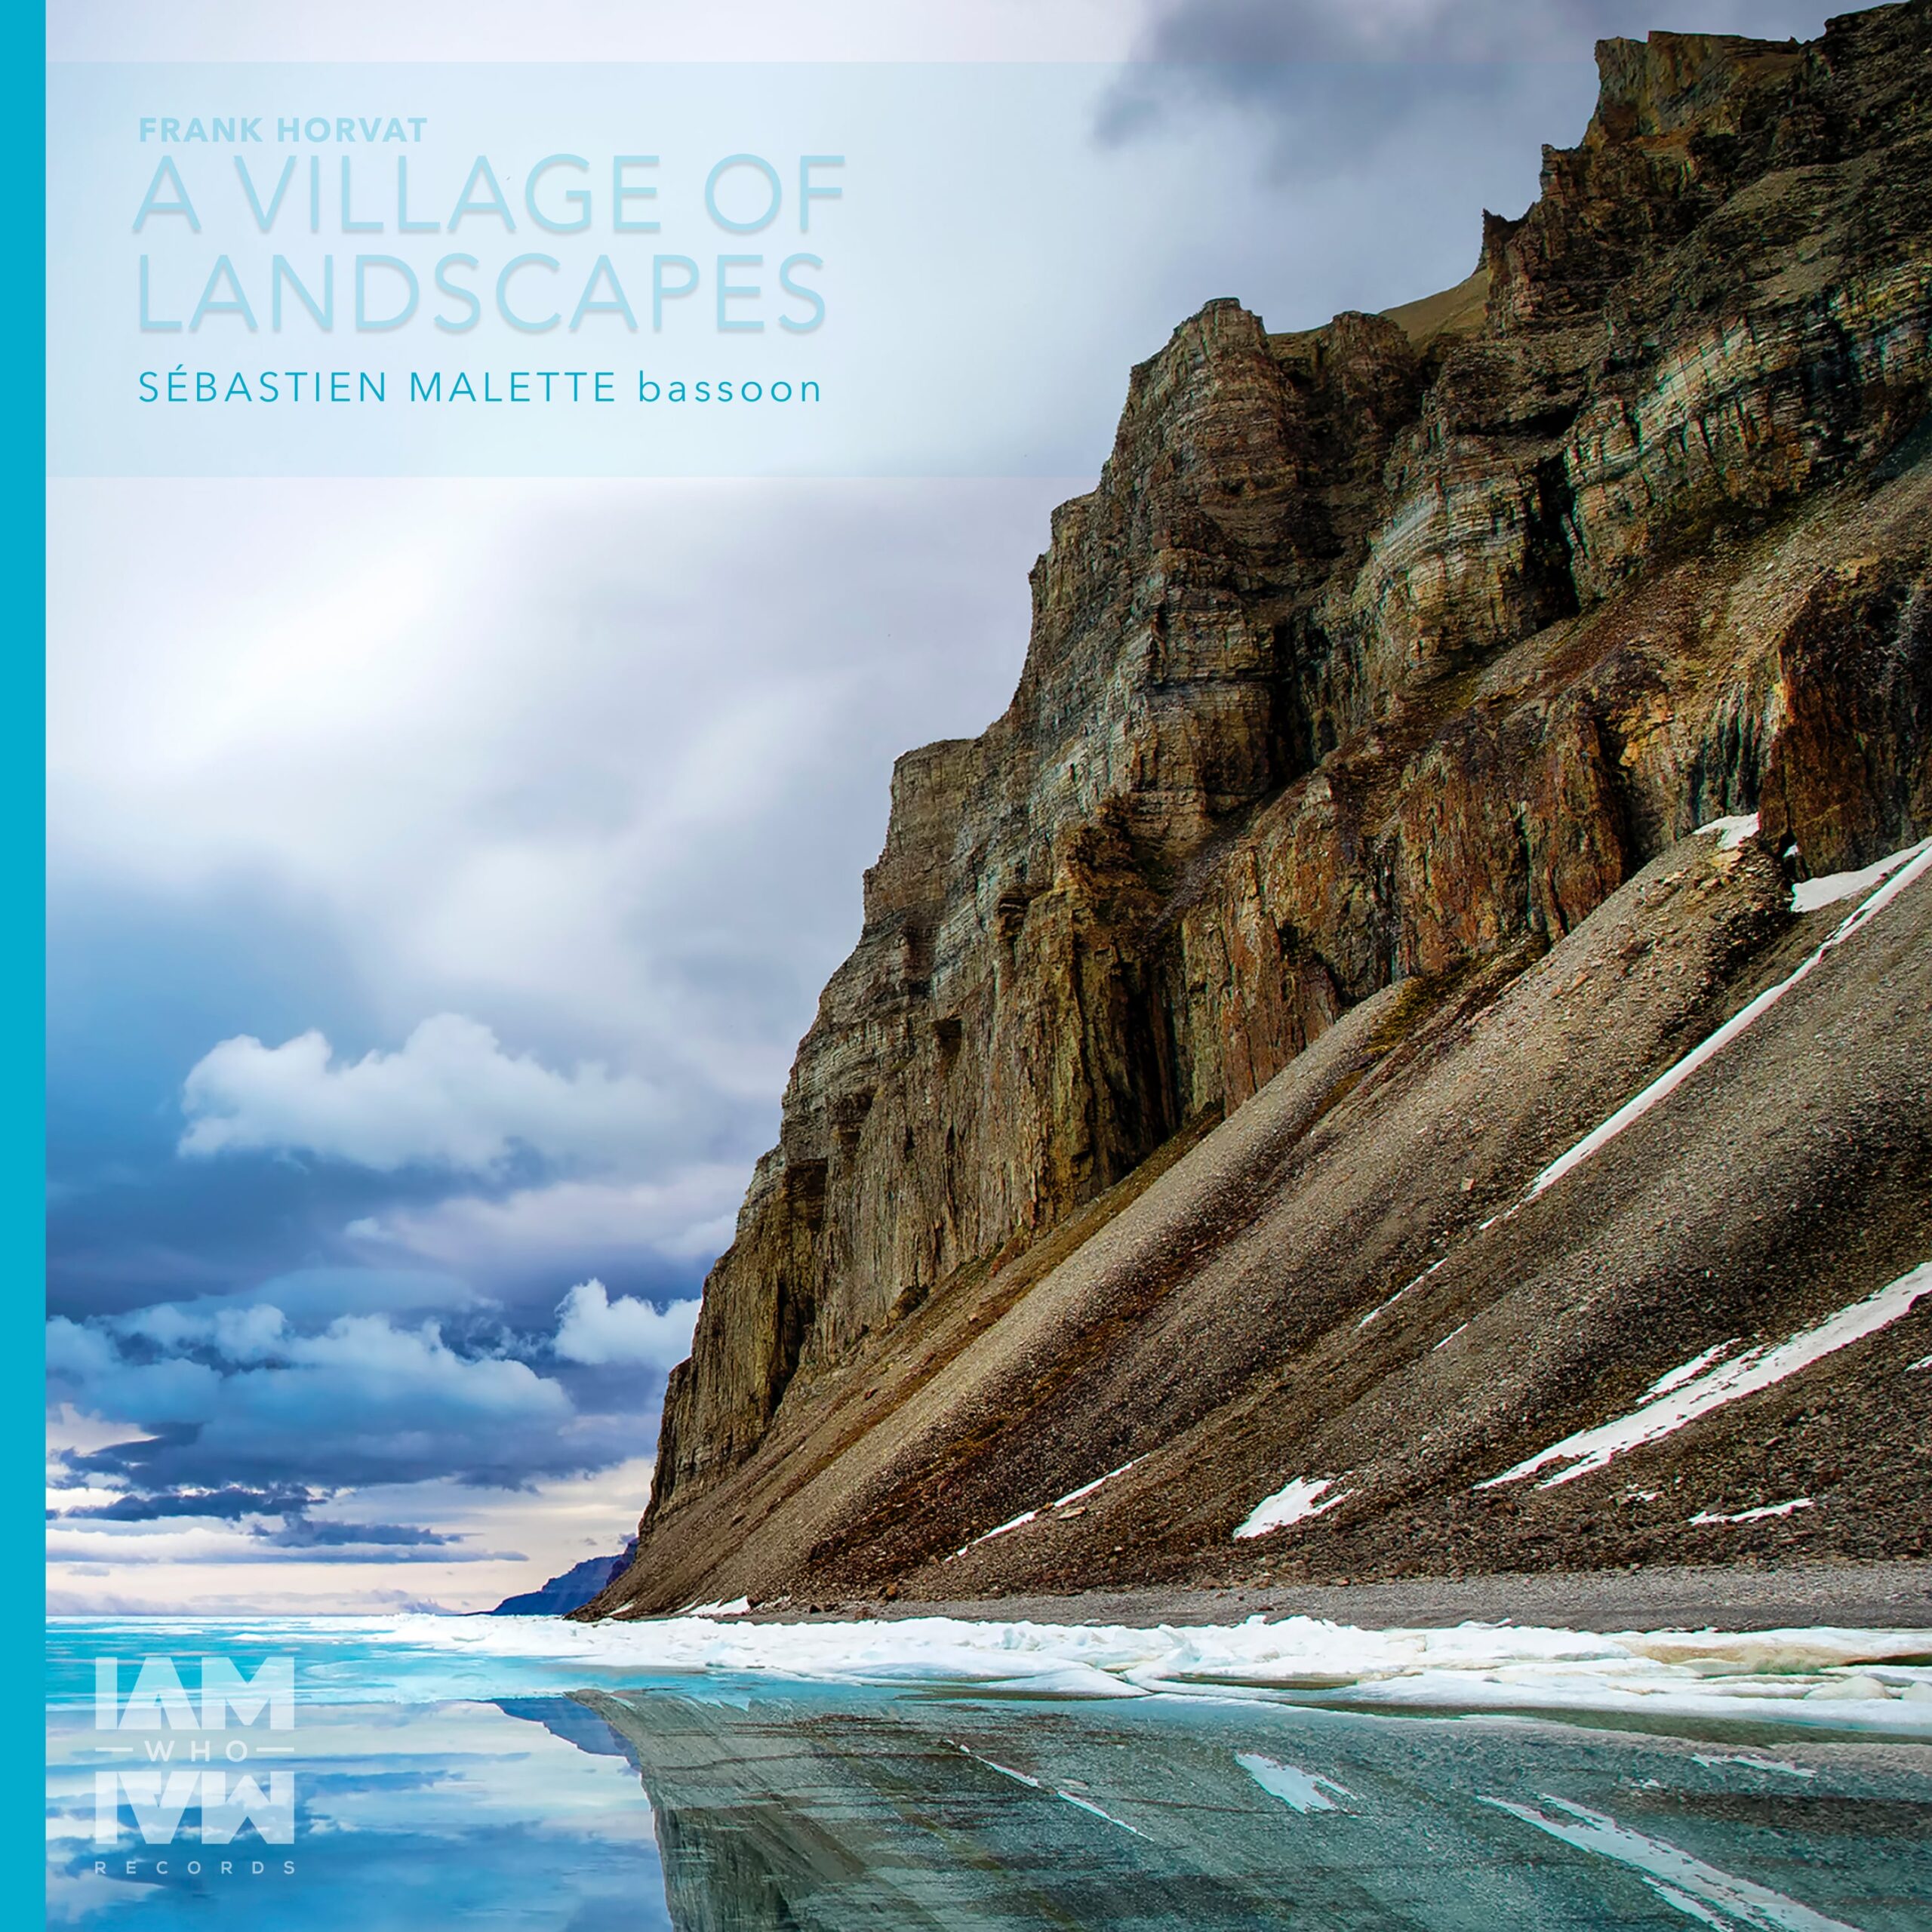 A Village of Landscapes (performed by Sebastien Malette, composed by Frank Horvat)